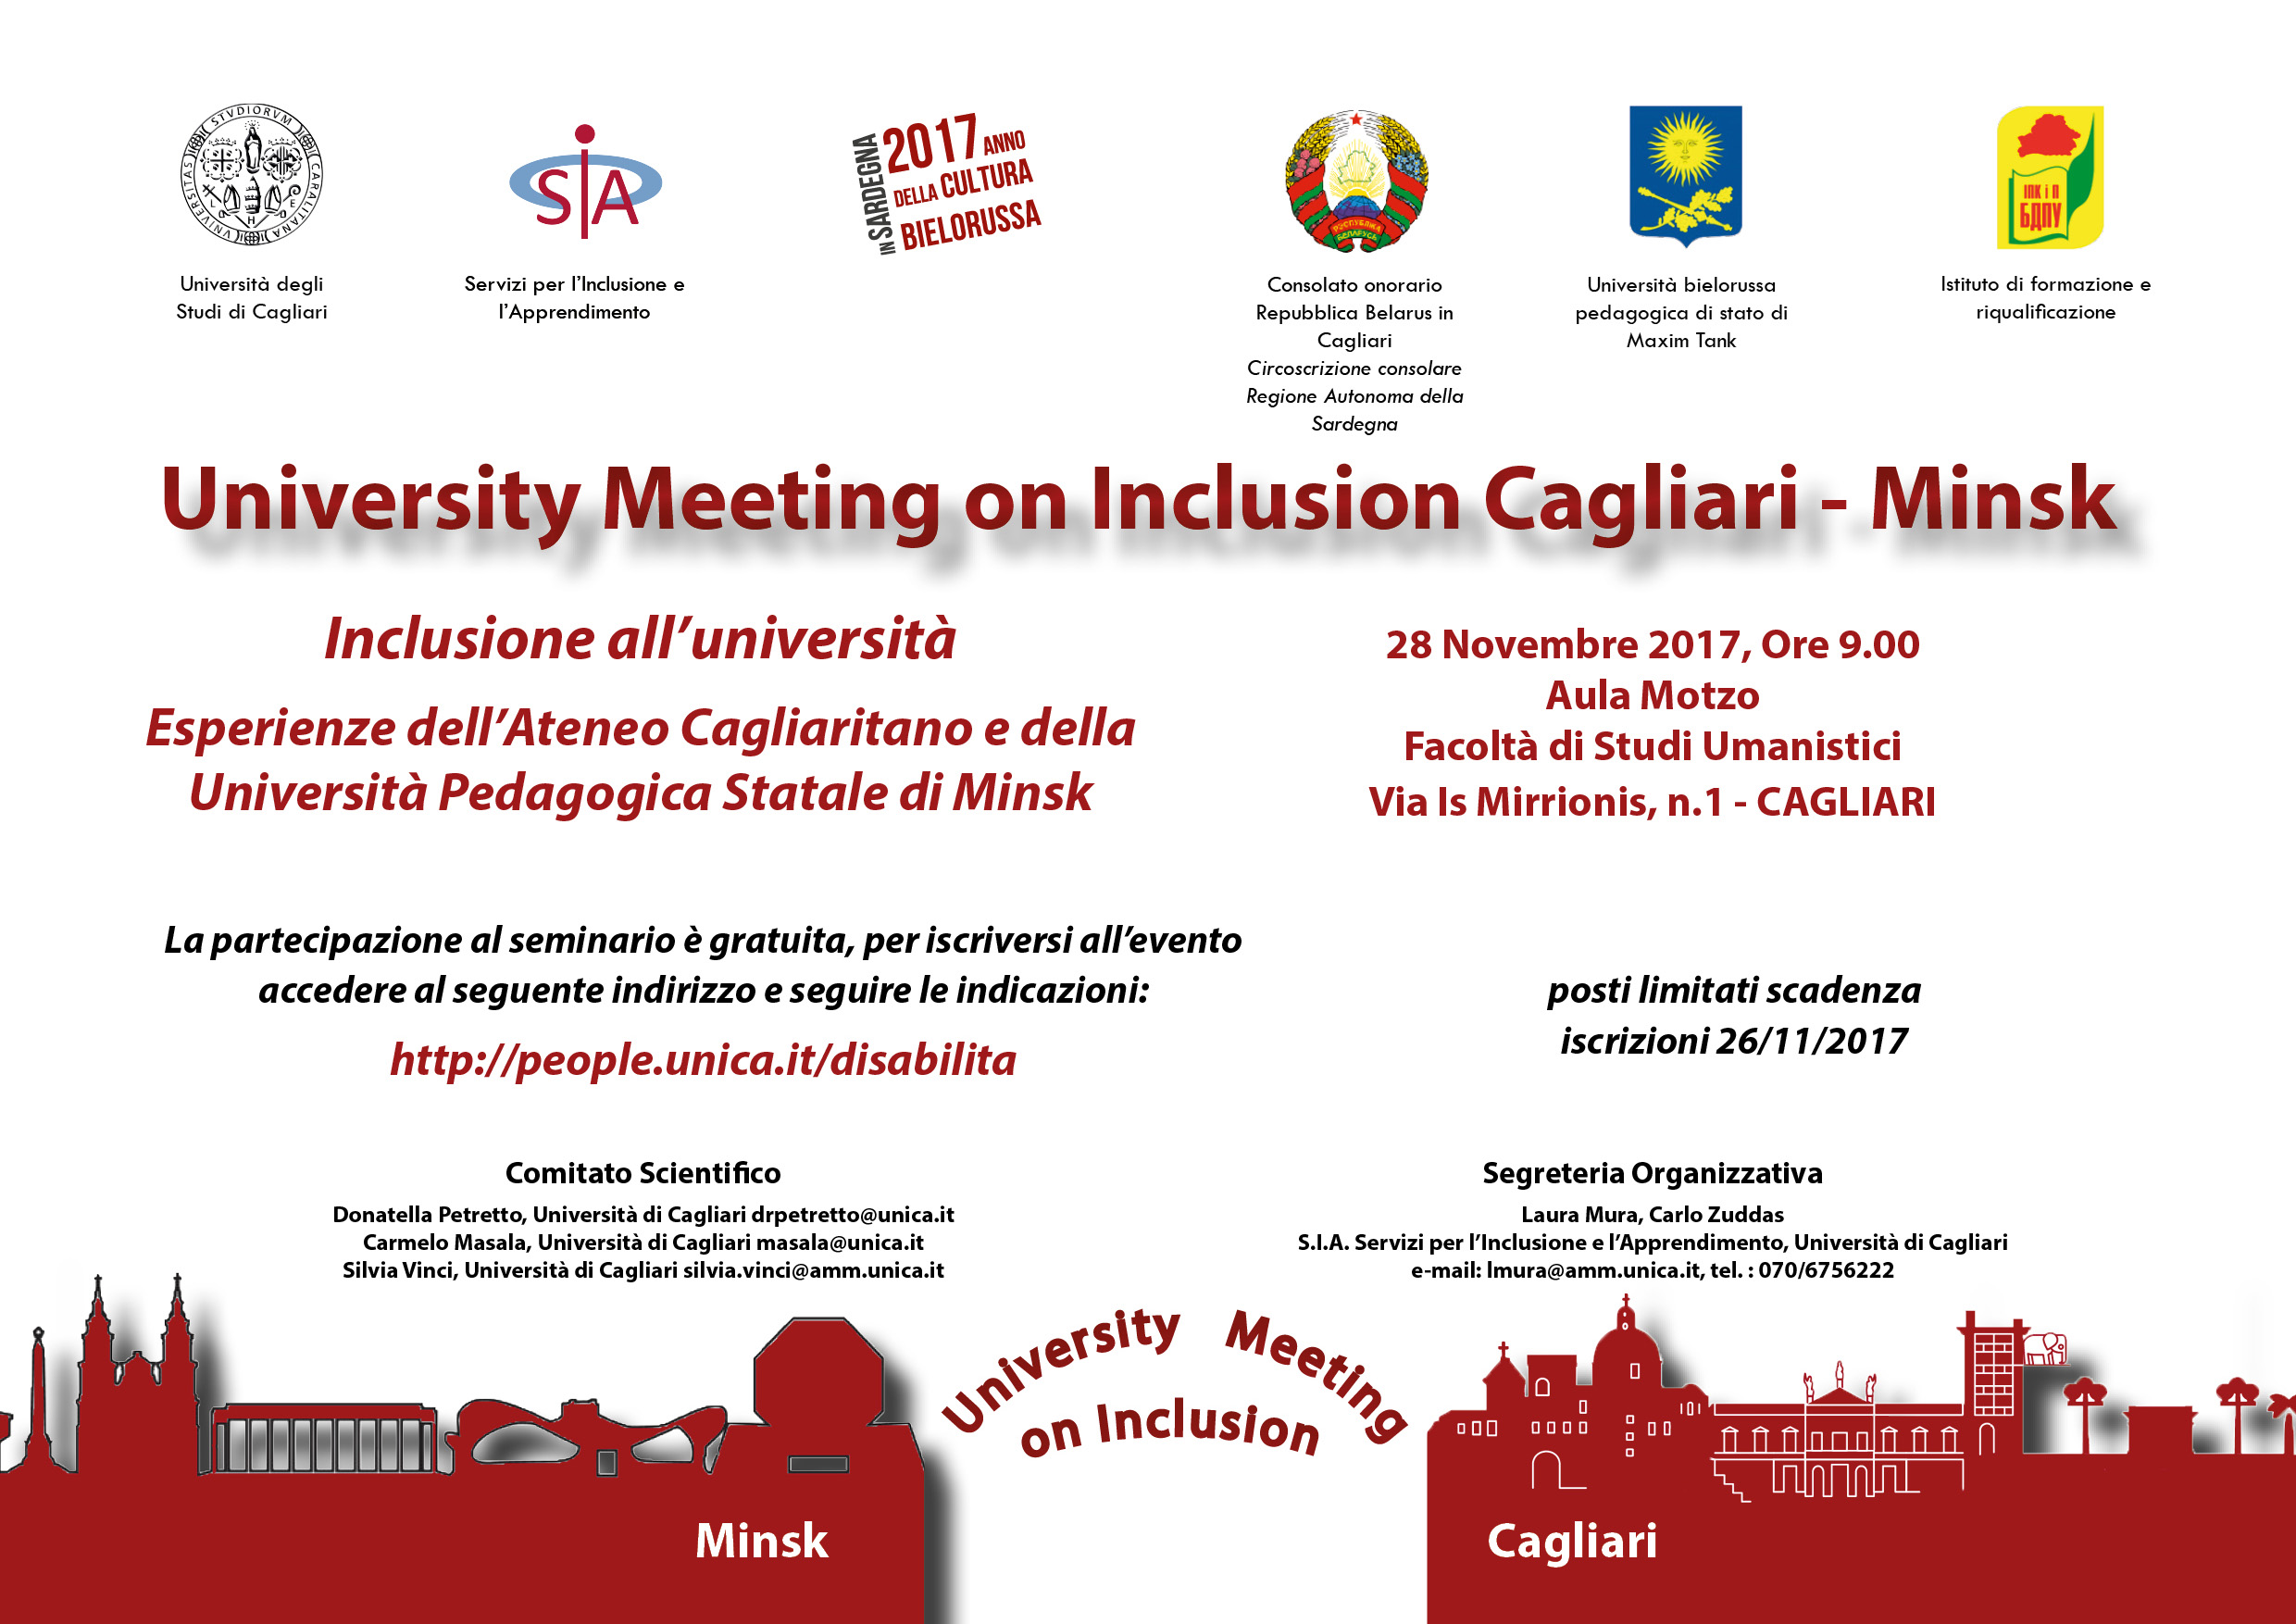 Seminario University Meeting on Inclusion, Cagliari - Minsk - 28 Novembre 2017